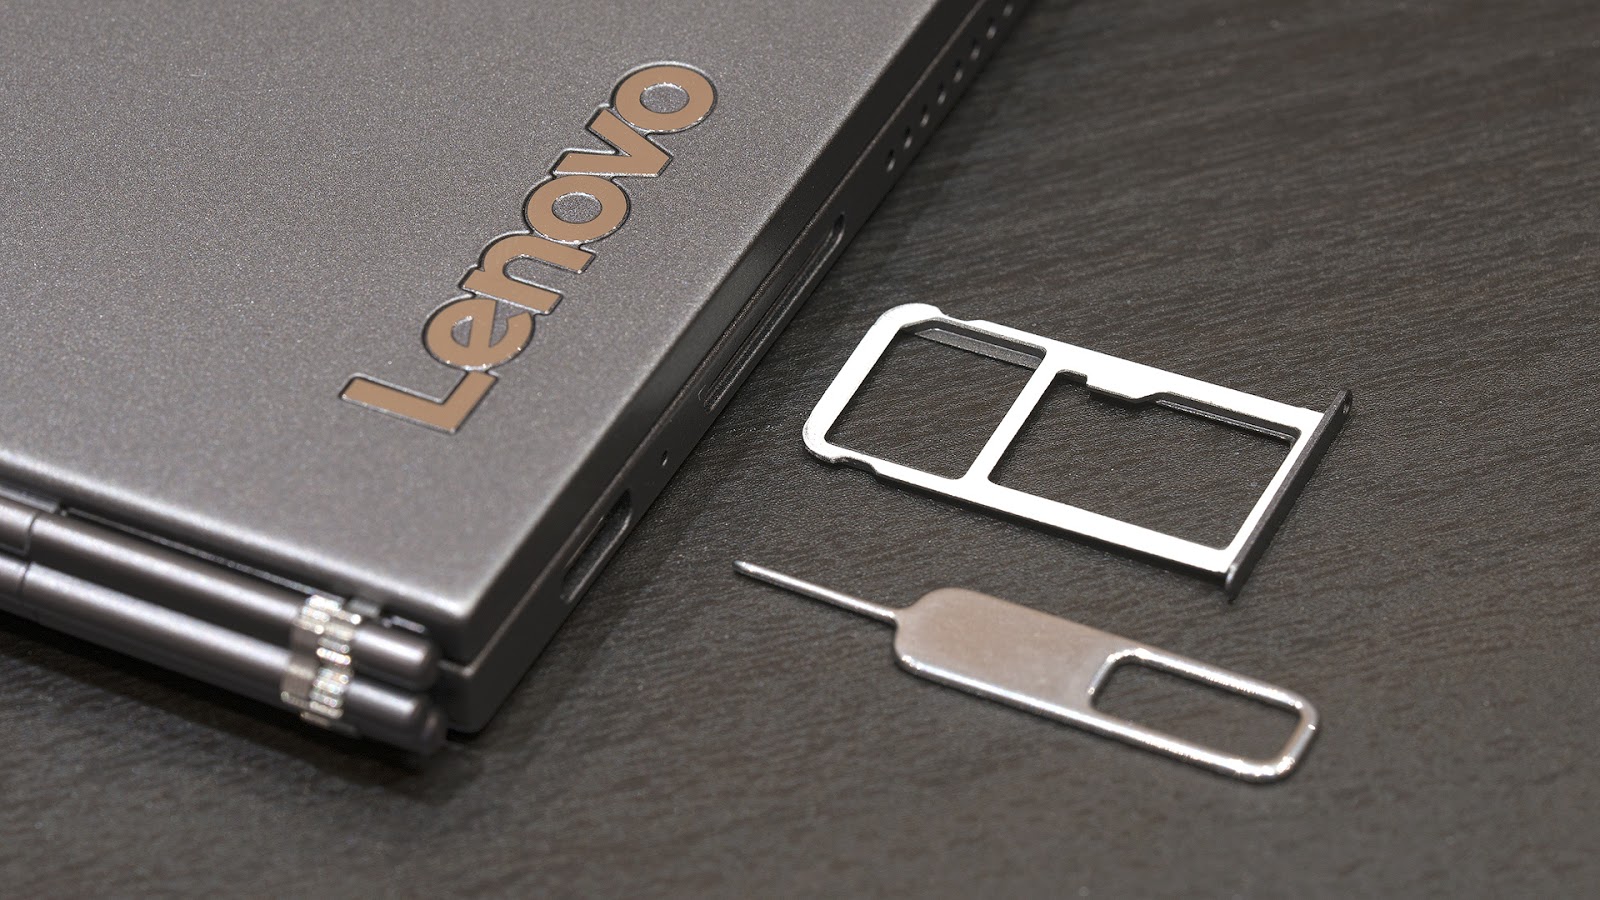 Lenovo YogaBook C930: устройство, которое заменяет сразу четыре гаджета - 8